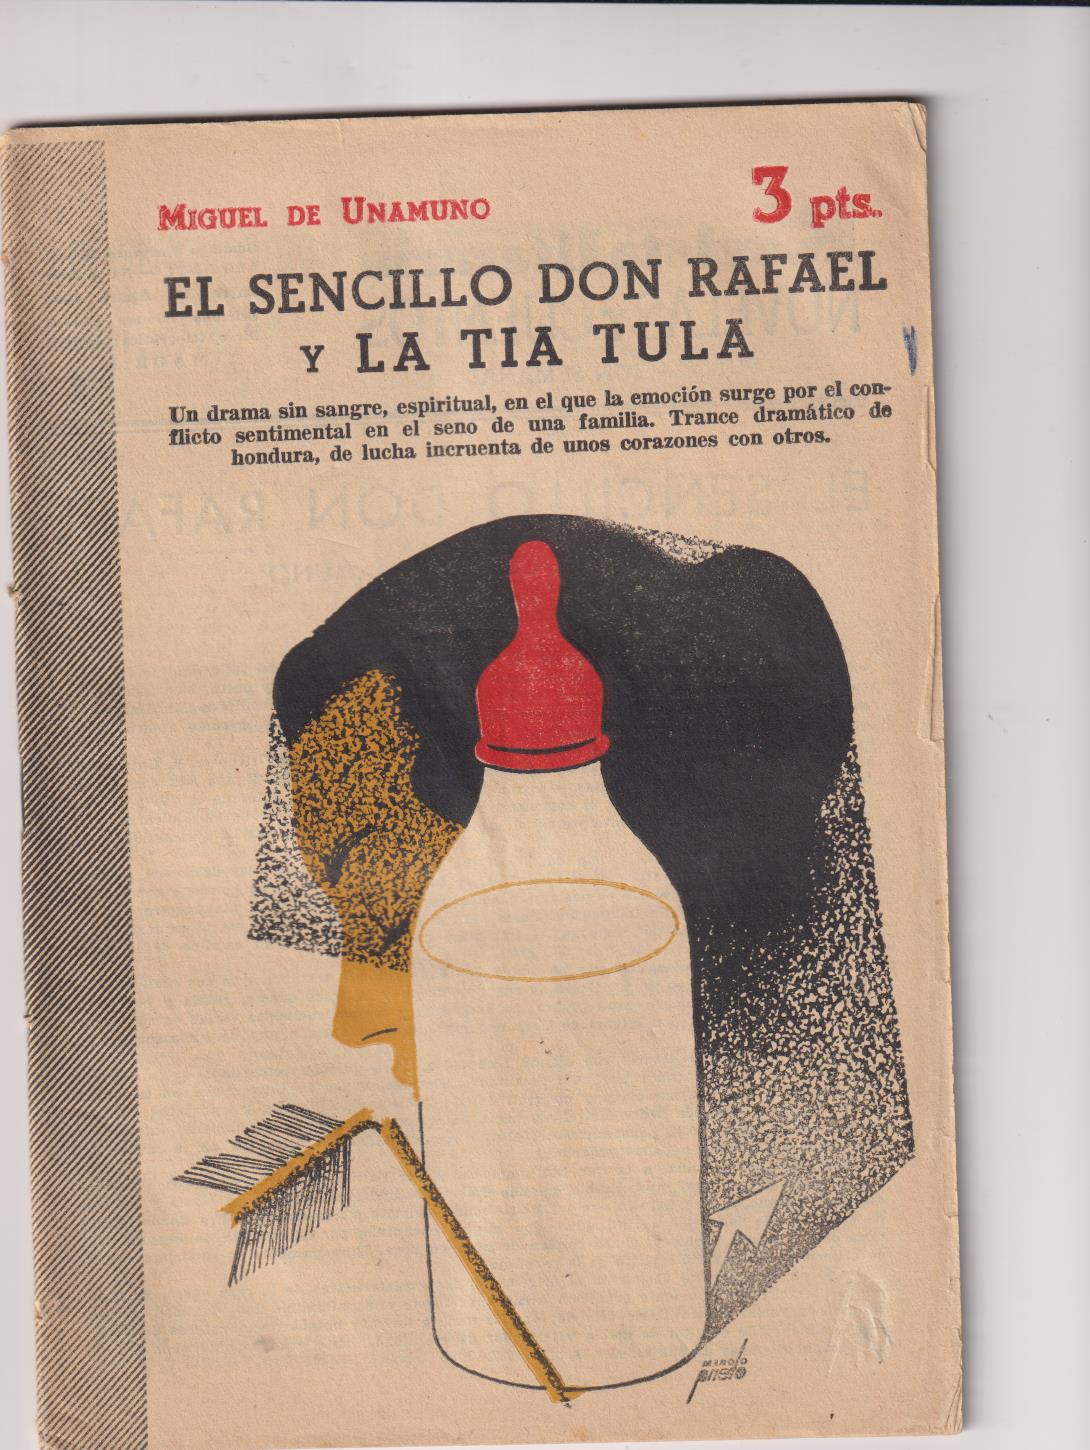 Revista Literaria nº 1221. El Sencillo Don Rafael y la Tía Tula por Miguel de Unamuno, 1954